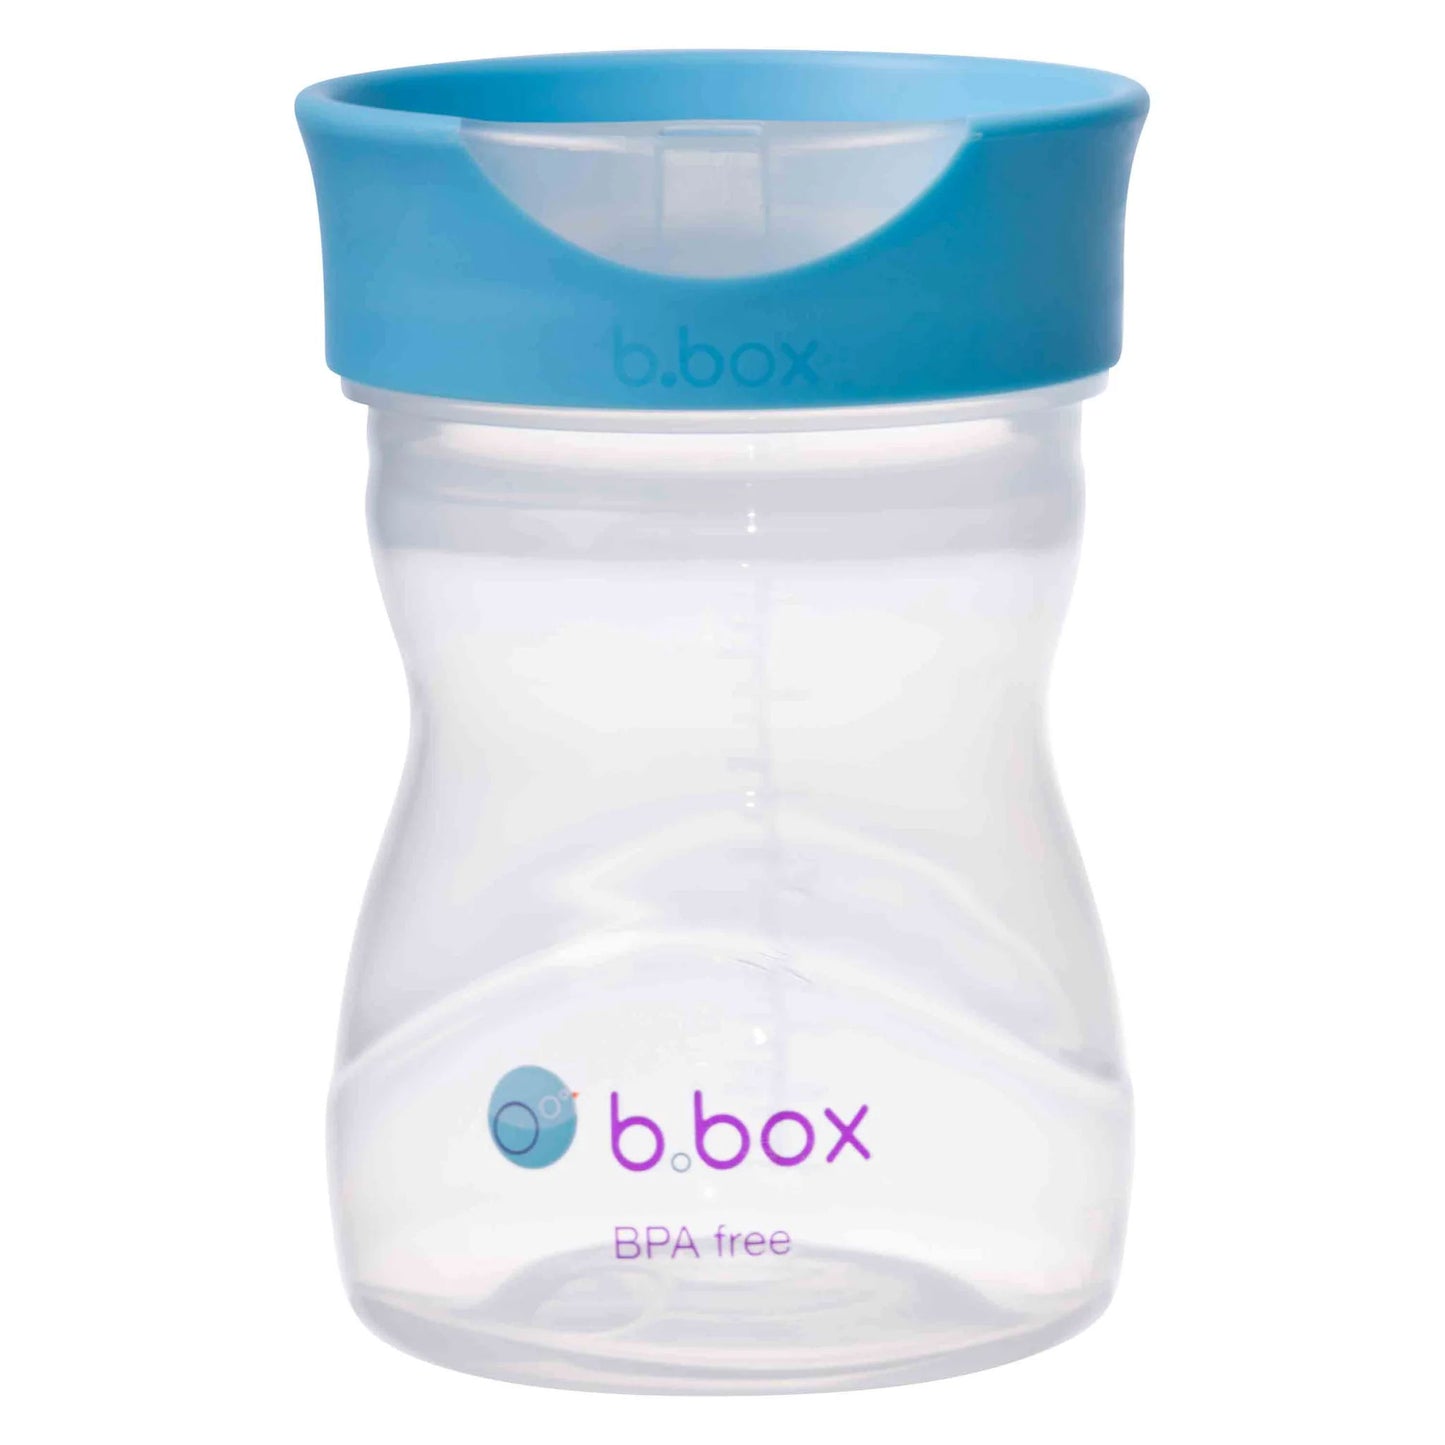 b.box Spout Cup (Blueberry)